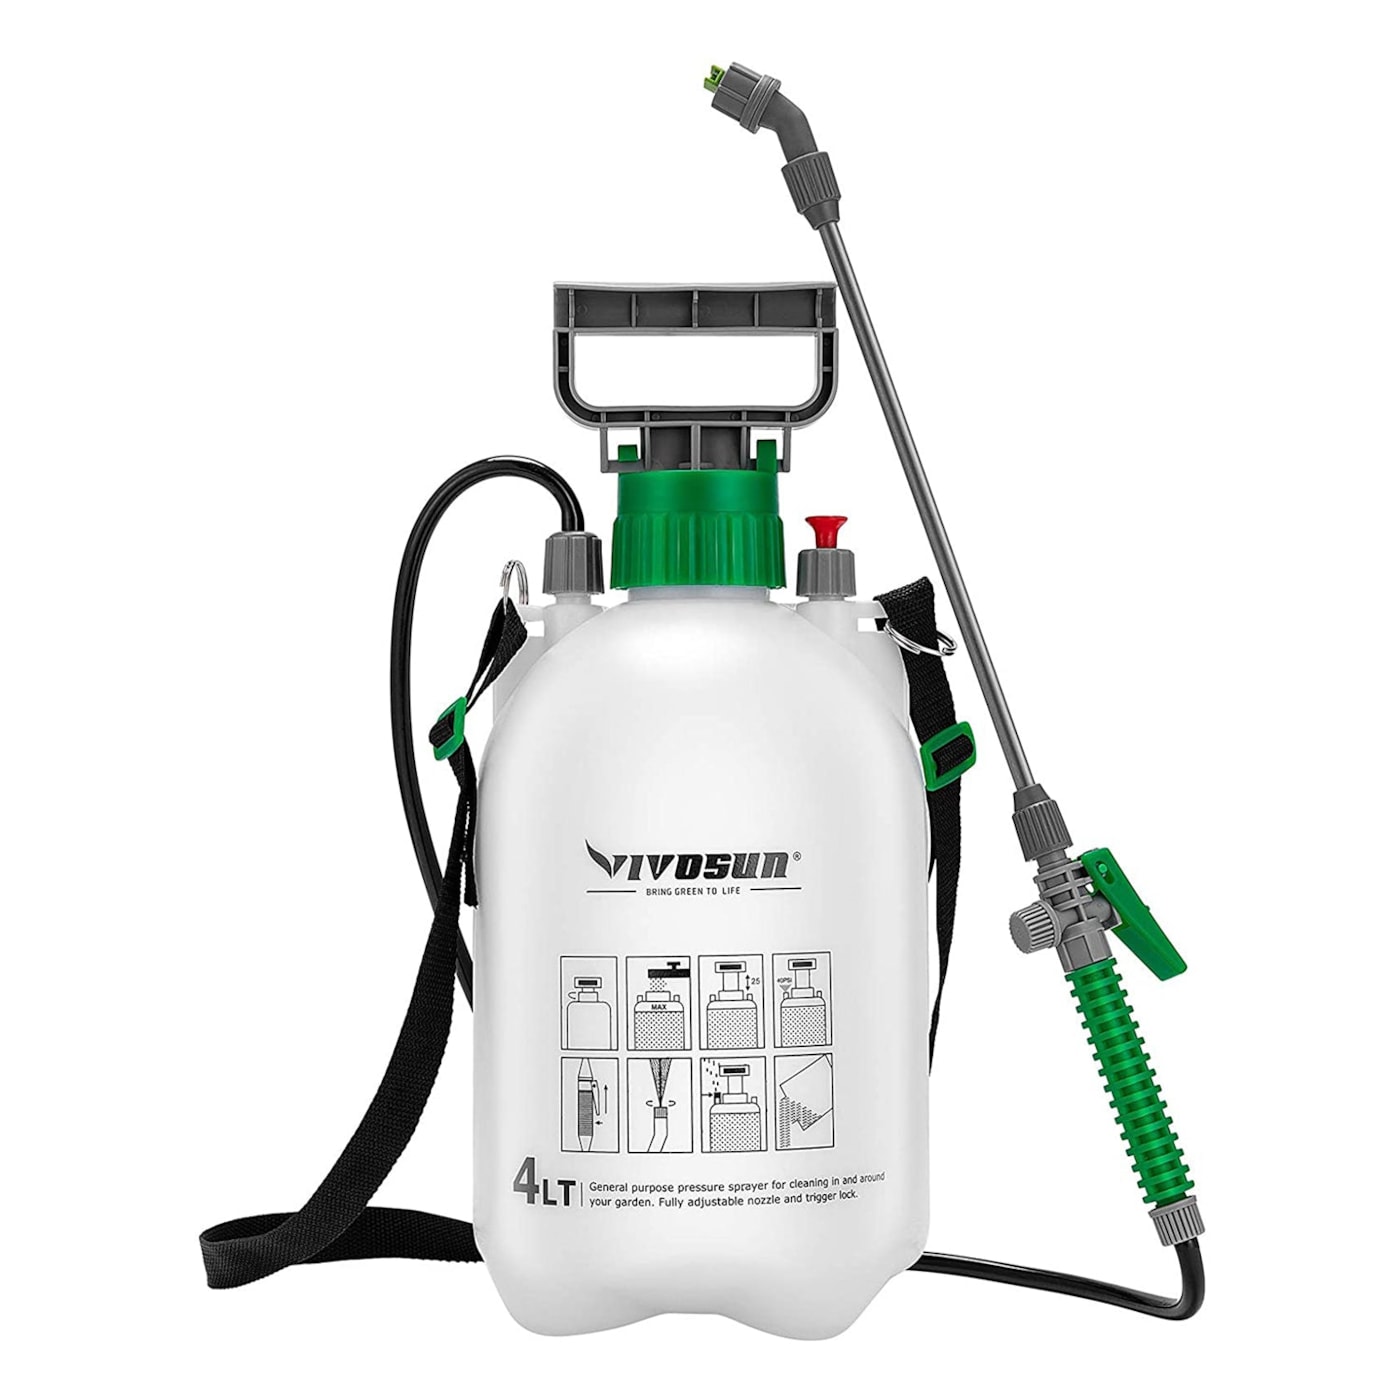 VIVOSUN 1.3 Gallon Pressure Sprayer 3 Water Nozzles with Adjustable Shoulder Strap